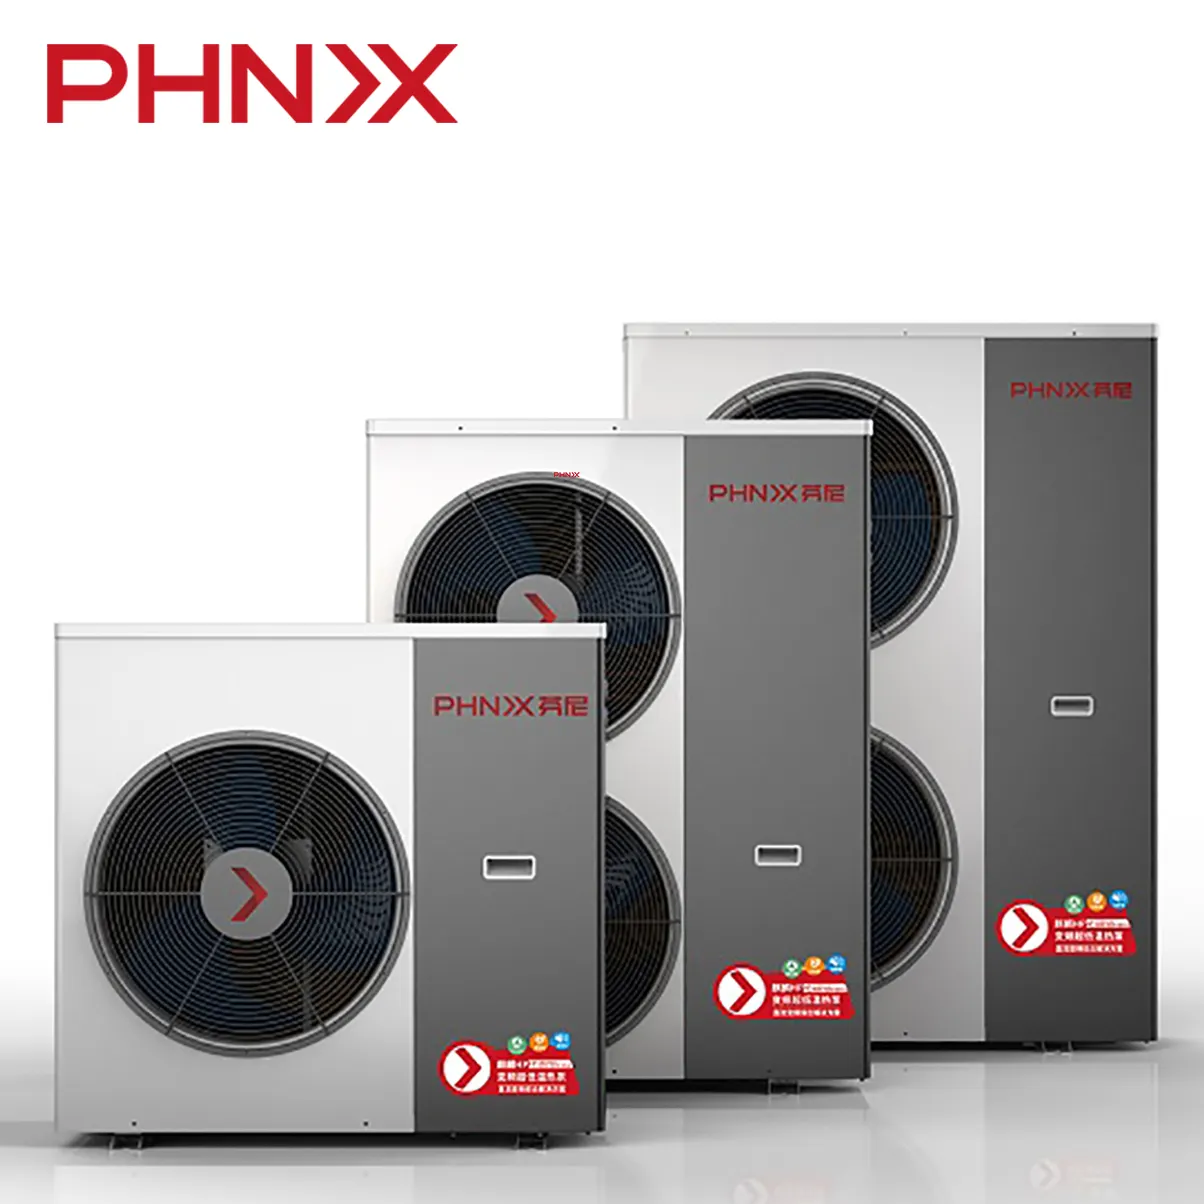 Phnix hp14 2020 sistema de aquecimento da bomba de calor + bomba de água para aquecimento